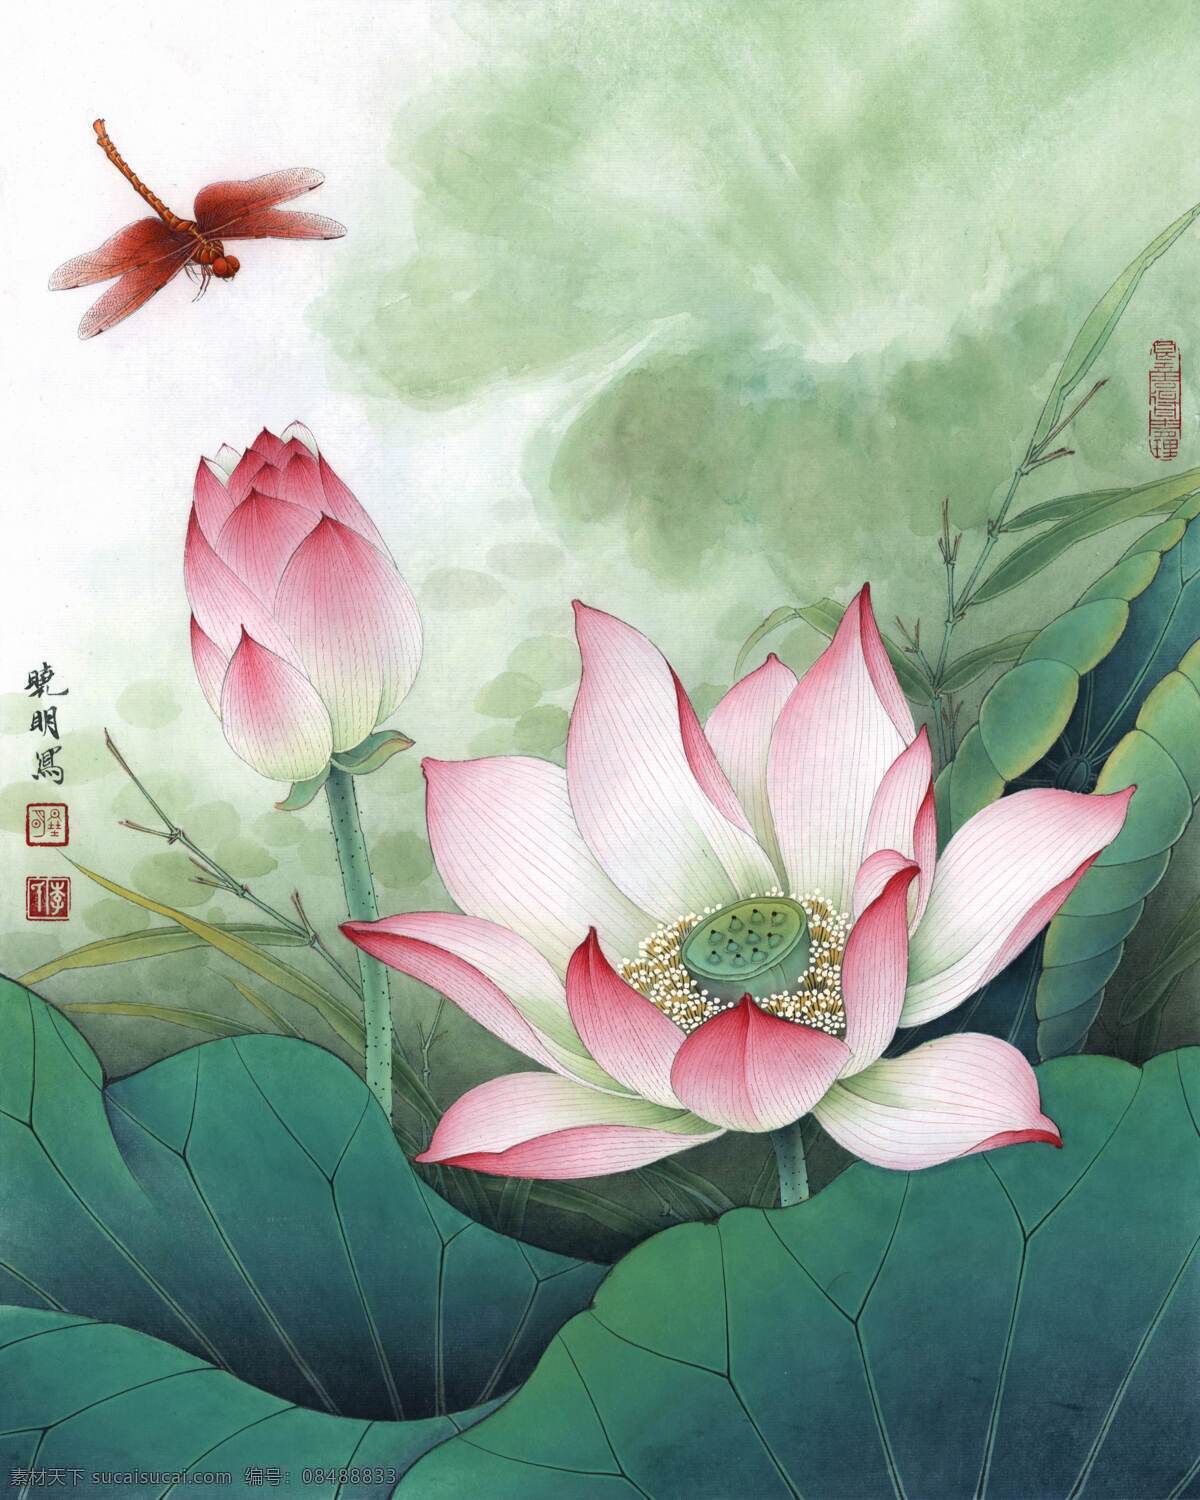 resize of 2012 荷花 红 蜻蜓 花鸟画 设计素材 花鸟画篇 中国画篇 书画美术 白色